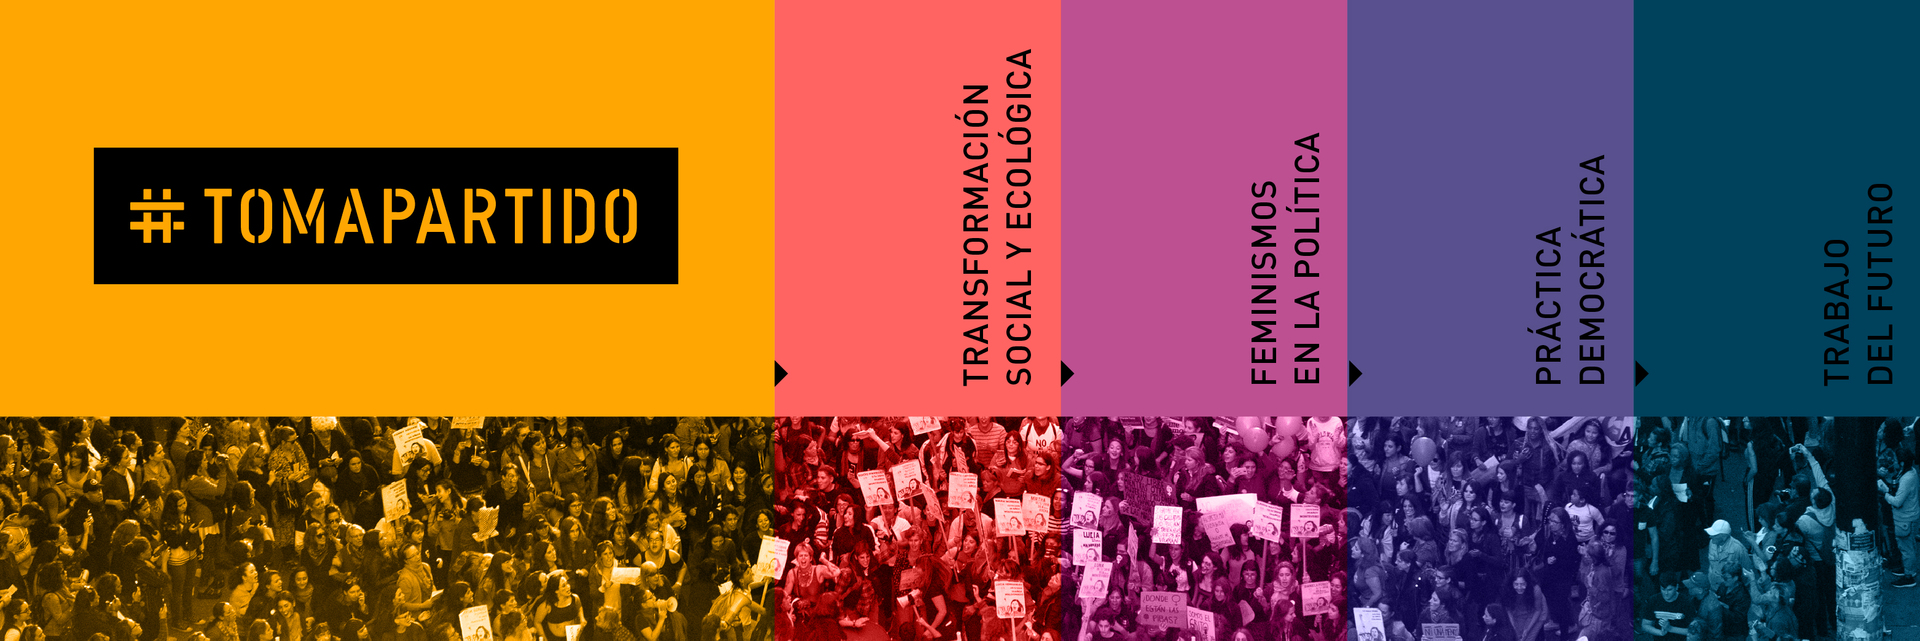 Demonstration und grafisches Banner mit den Worten:#ErgreifePartei, sozial-ökologische Transformation, Feminismus in der Politik, demokratische Praxis, Arbeit der Zukunft